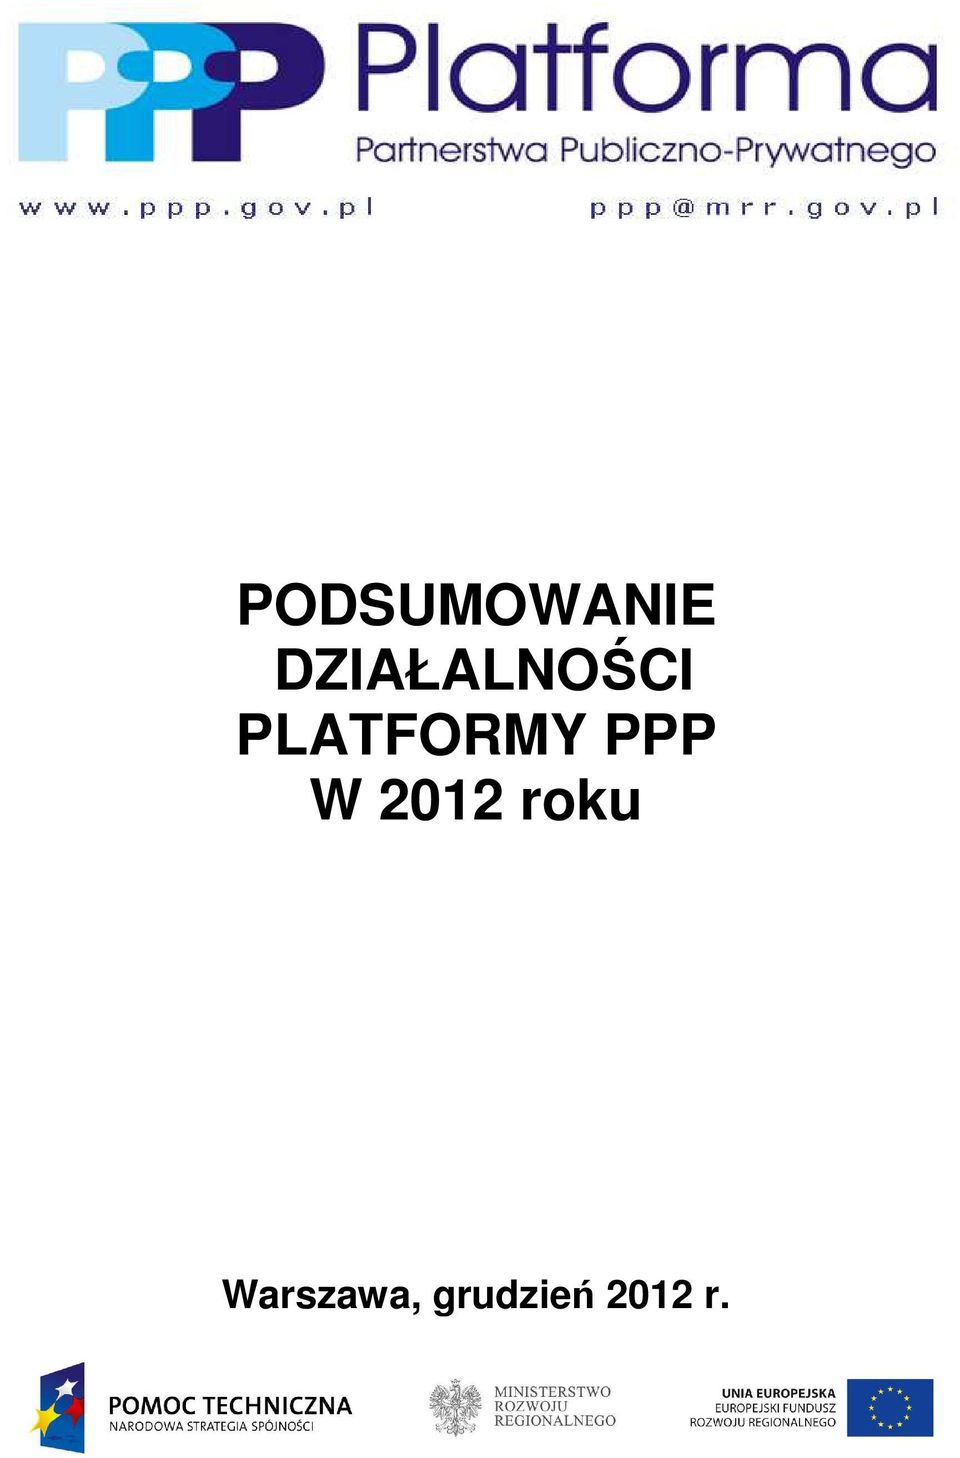 PLATFORMY PPP W